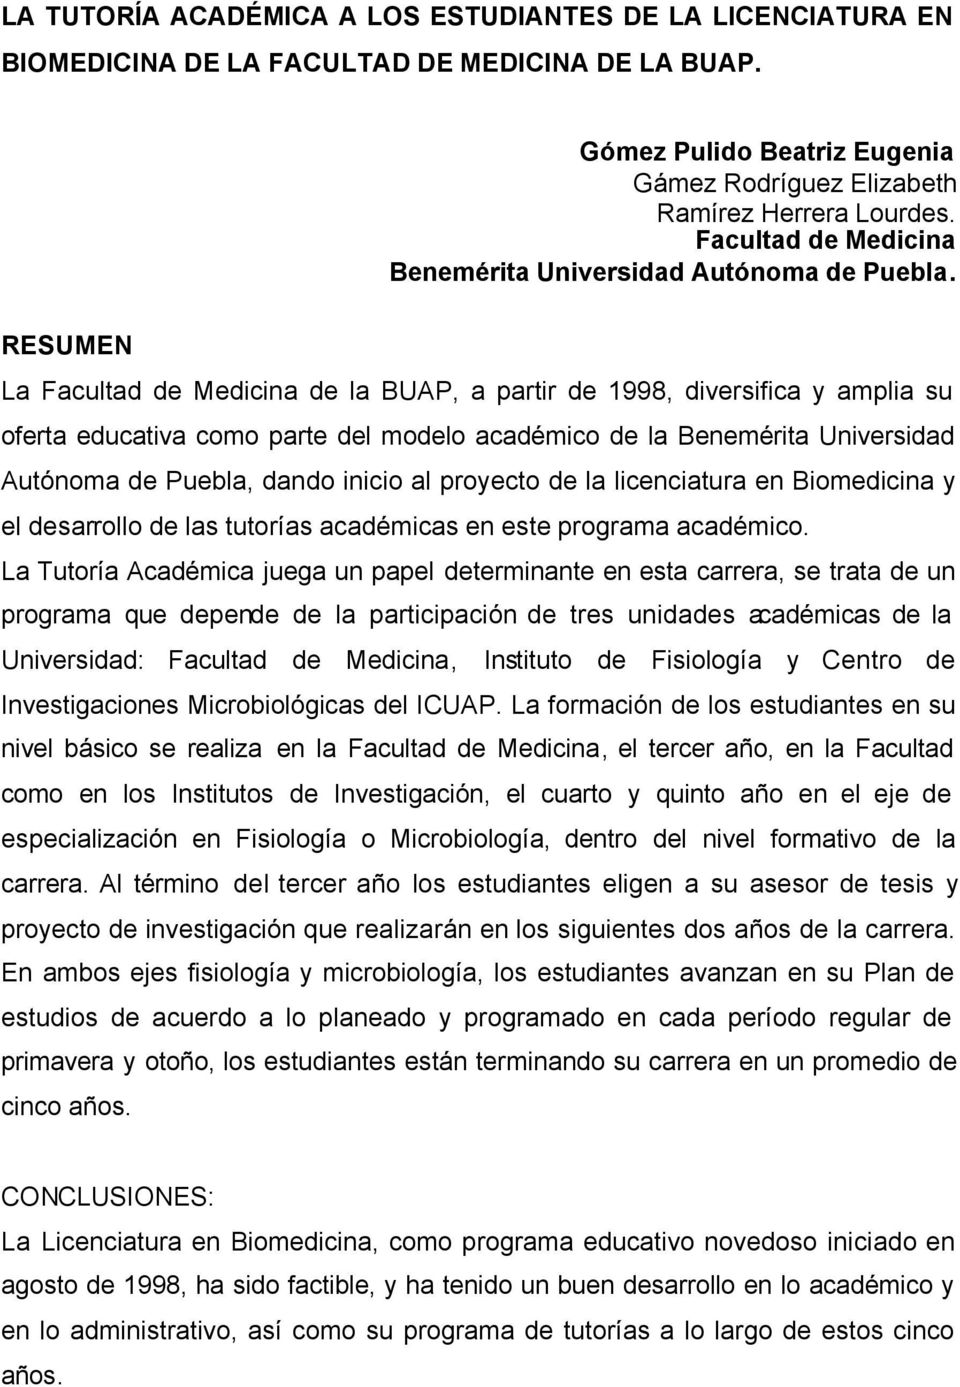 RESUMEN La Facultad de Medicina de la BUAP, a partir de 1998, diversifica y amplia su oferta educativa como parte del modelo académico de la Benemérita Universidad Autónoma de Puebla, dando inicio al